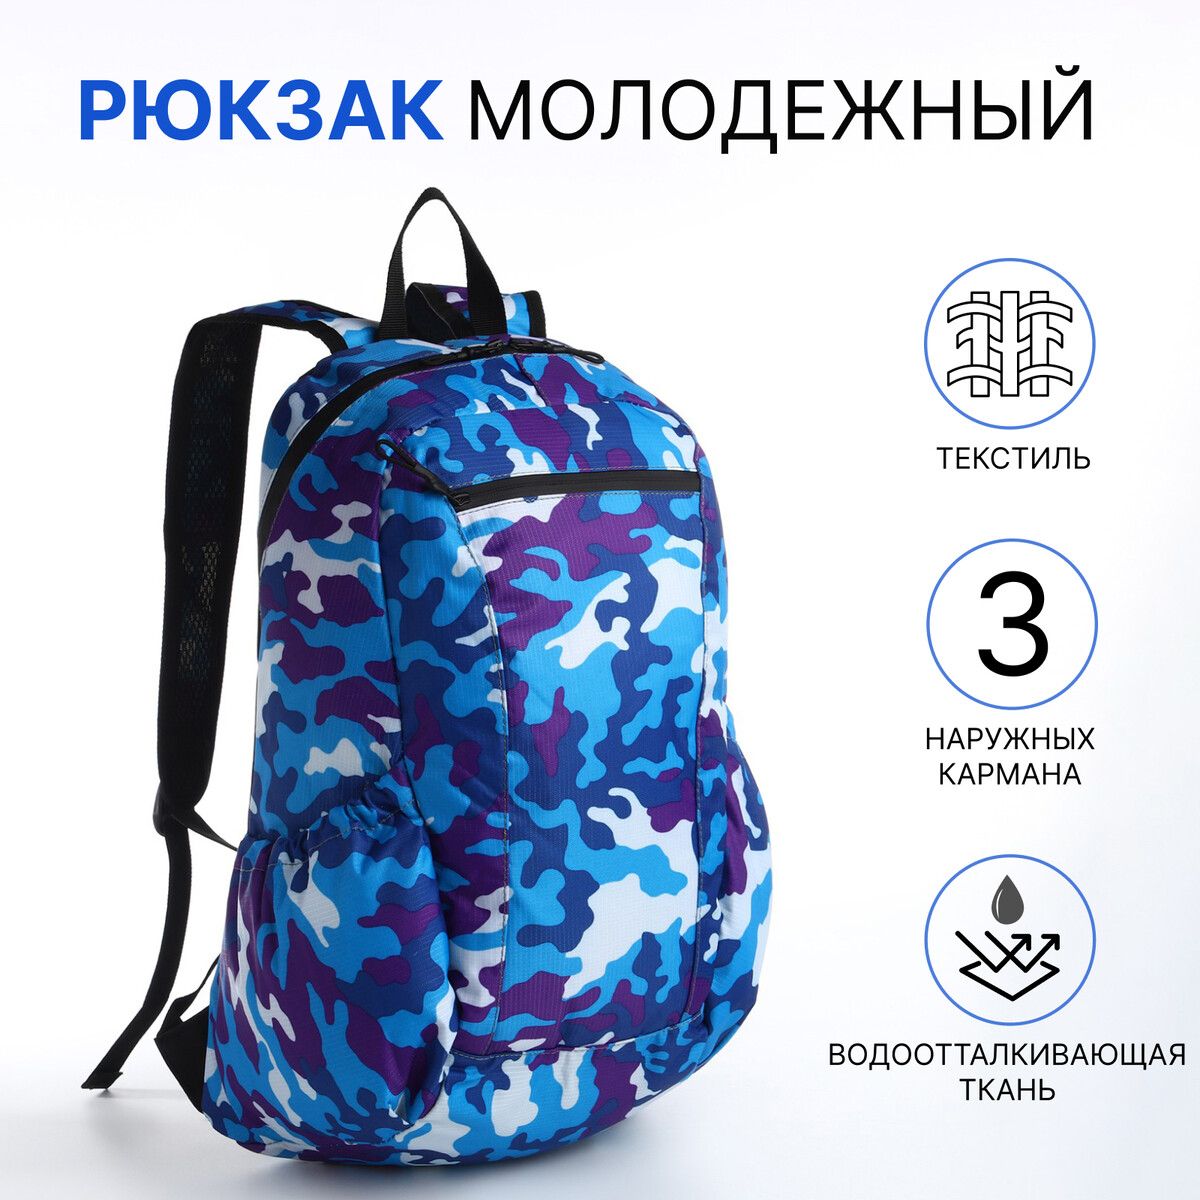 Рюкзак молодежный, водонепроницаемый на молнии, 3 кармана, цвет синий рюкзак молодежный из текстиля на молнии 3 кармана сумка держатель для чемодана синий